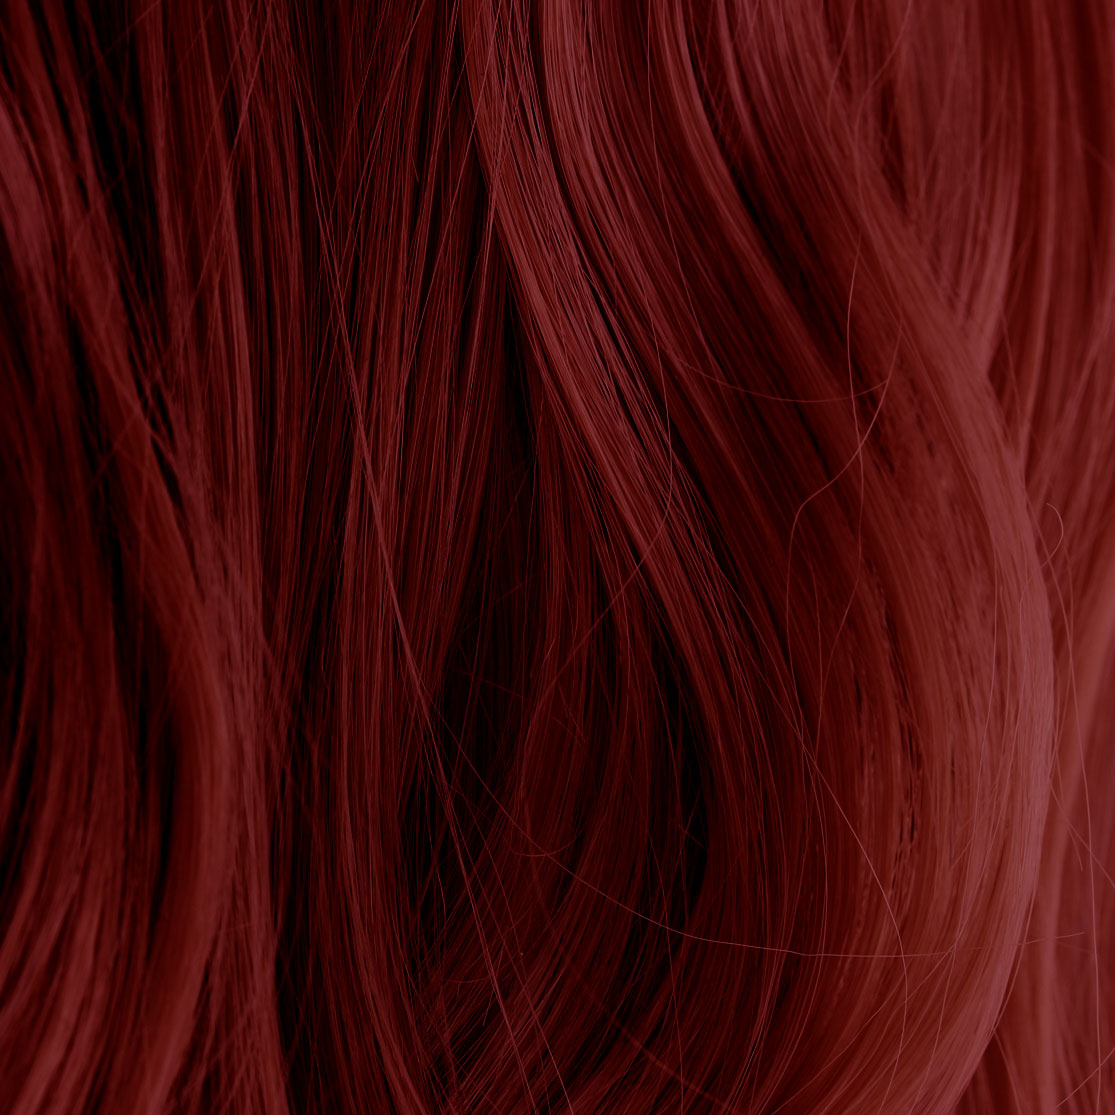 wine-red-henna-beard-dye